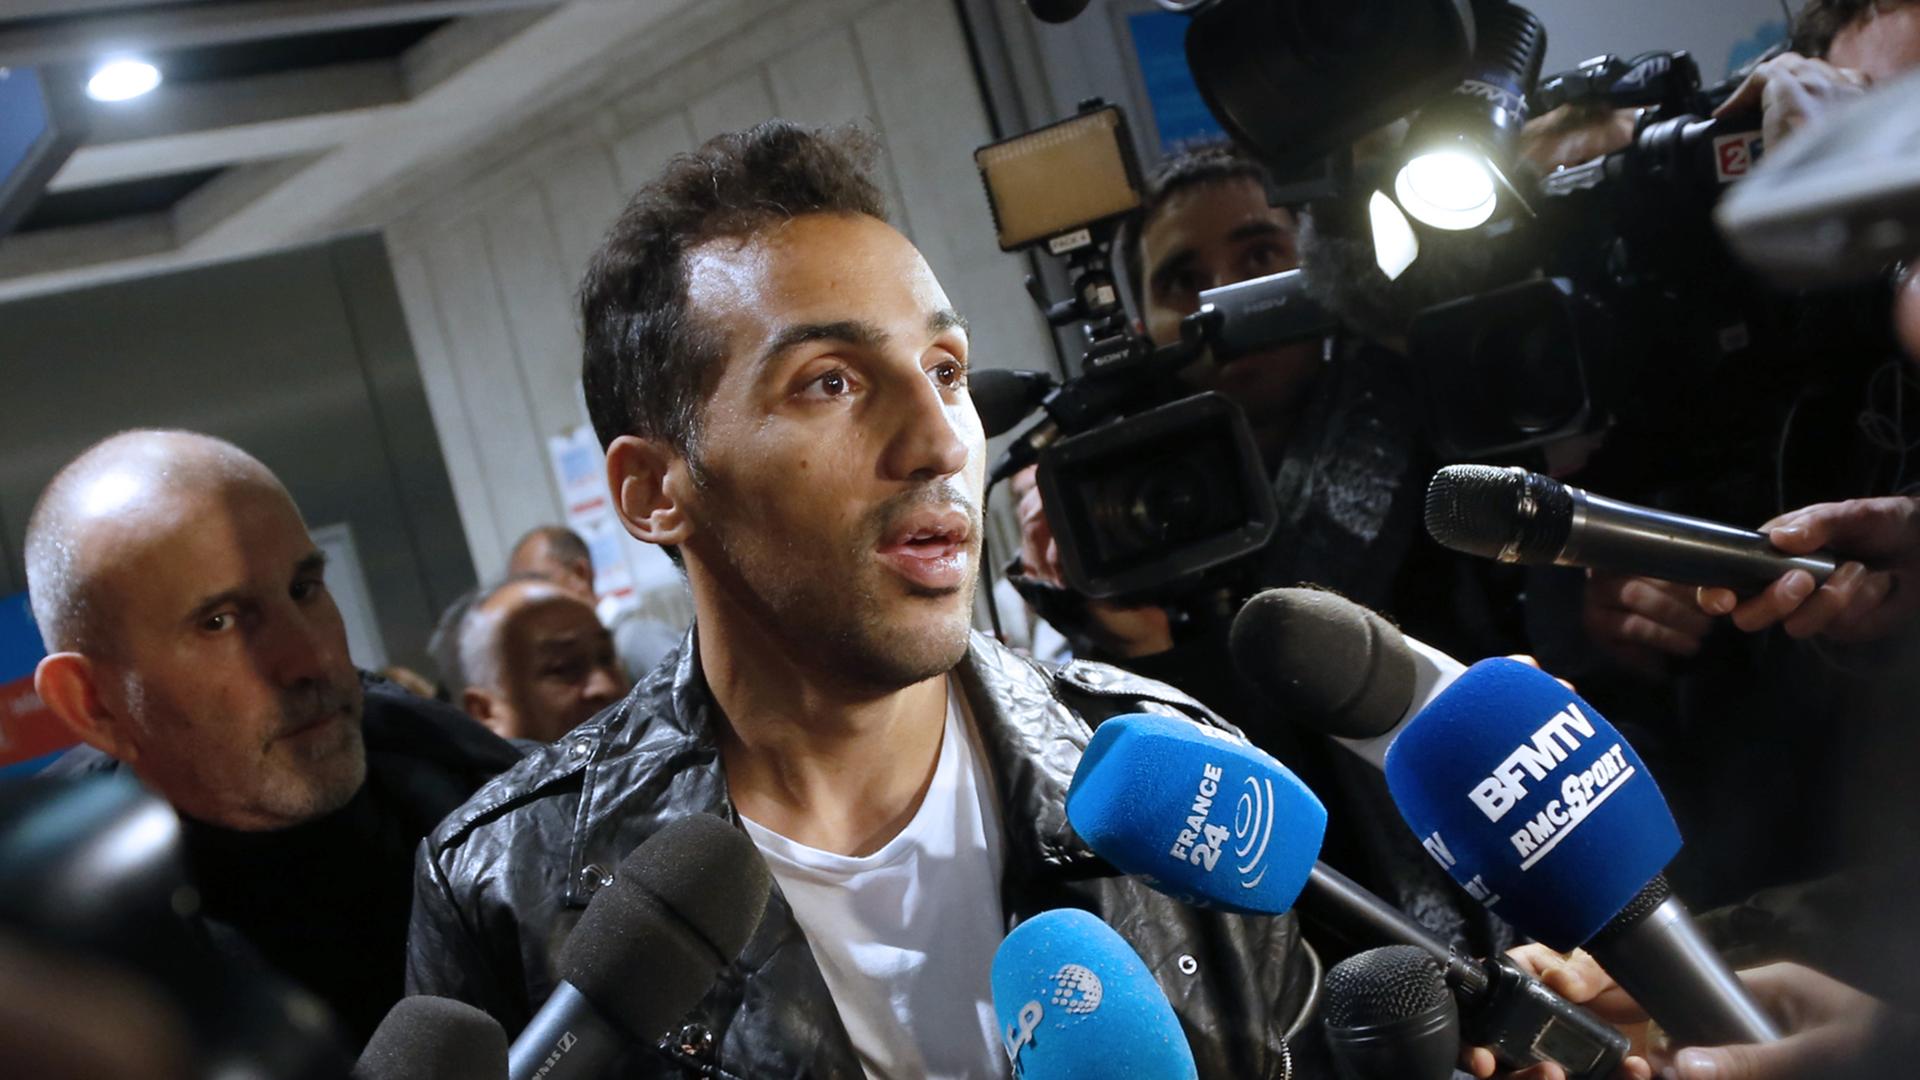 Der französisch-algerische Fußballer Zahir Belounis (33) am 28.11.2013 nach seiner Ankunft in Paris am Flughafen Roissy-Charles-de-Gaulle. Belounis hatte in Katar seit Juni 2012 nicht verlassen können, nachdem er eine Beschwerde gegen seinen Verein Al-Jaish wegen Gehaltszahlungen eingereicht hatte.